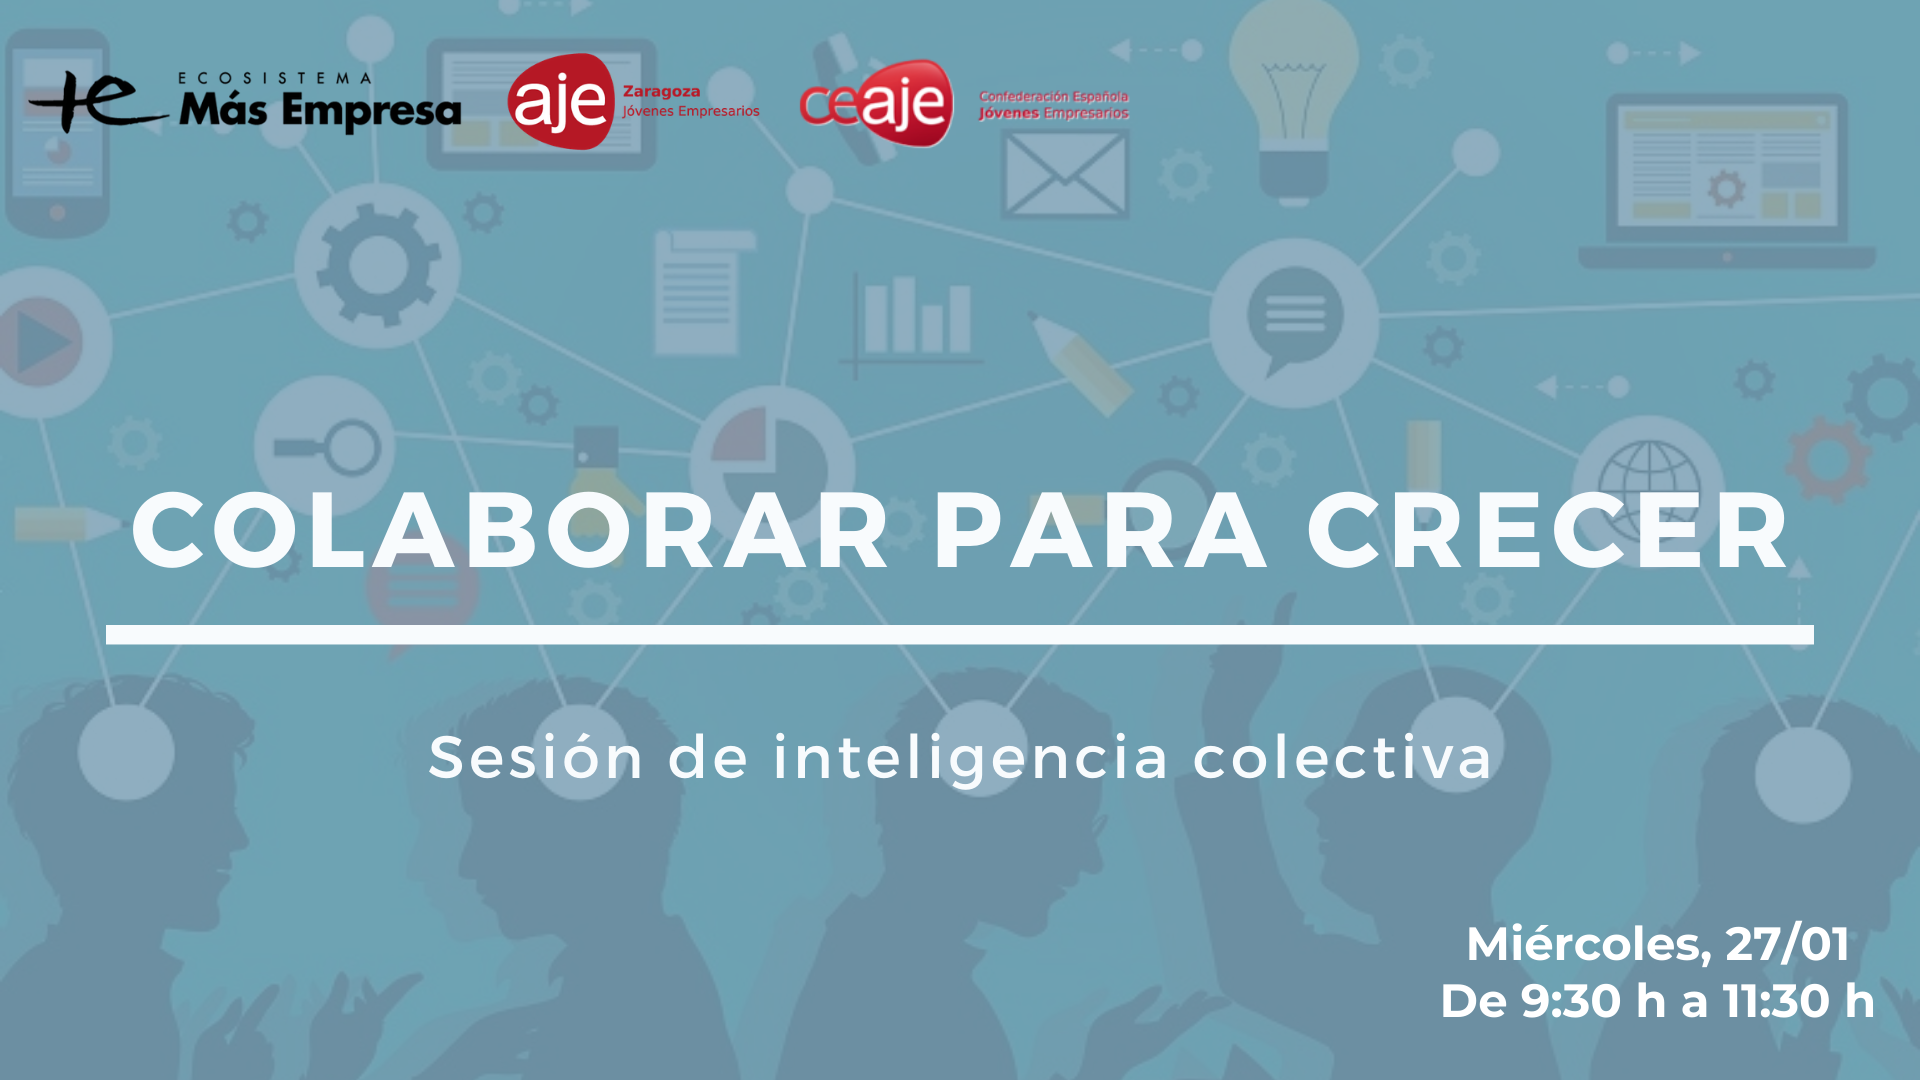 Más Empresa de Ibercaja, AJE Zaragoza y CEAJE se unen como altavoz del emprendimiento en la sesión de inteligencia colectiva ‘Colaborar para crecer’